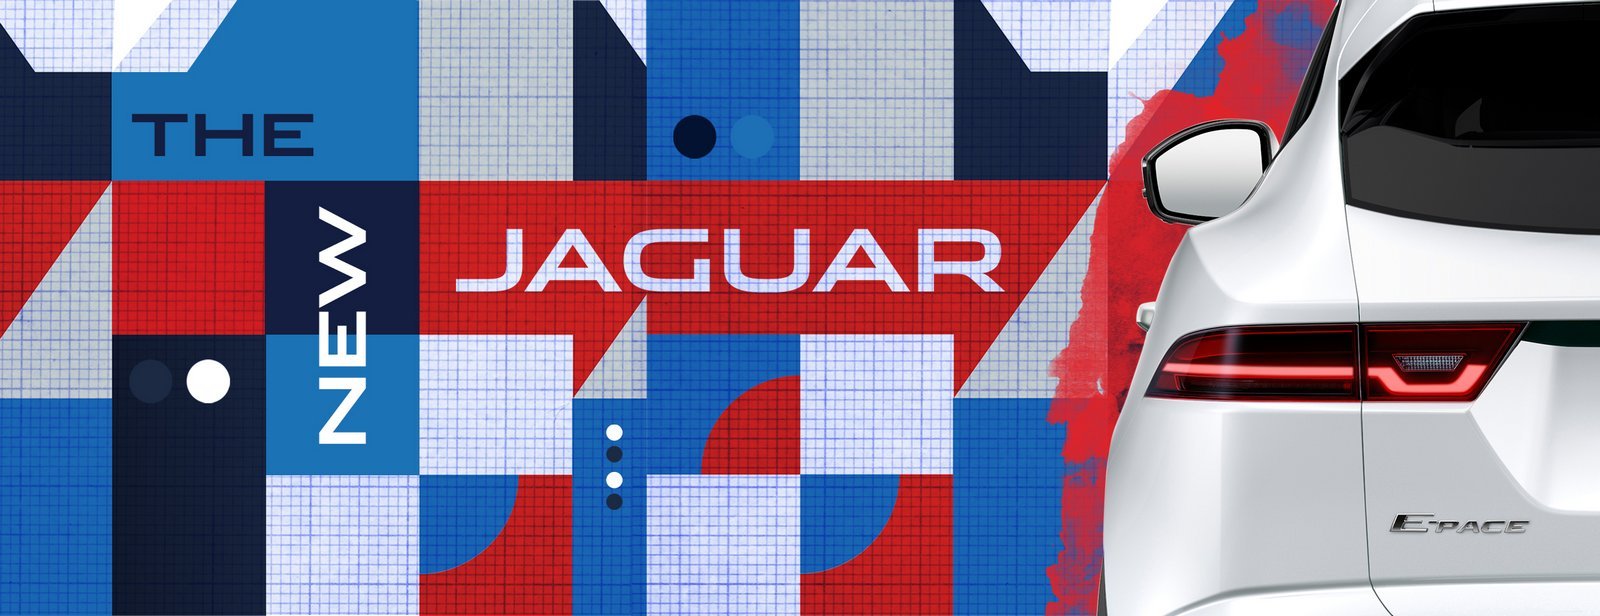 jaguar-e-pace-teaser-3